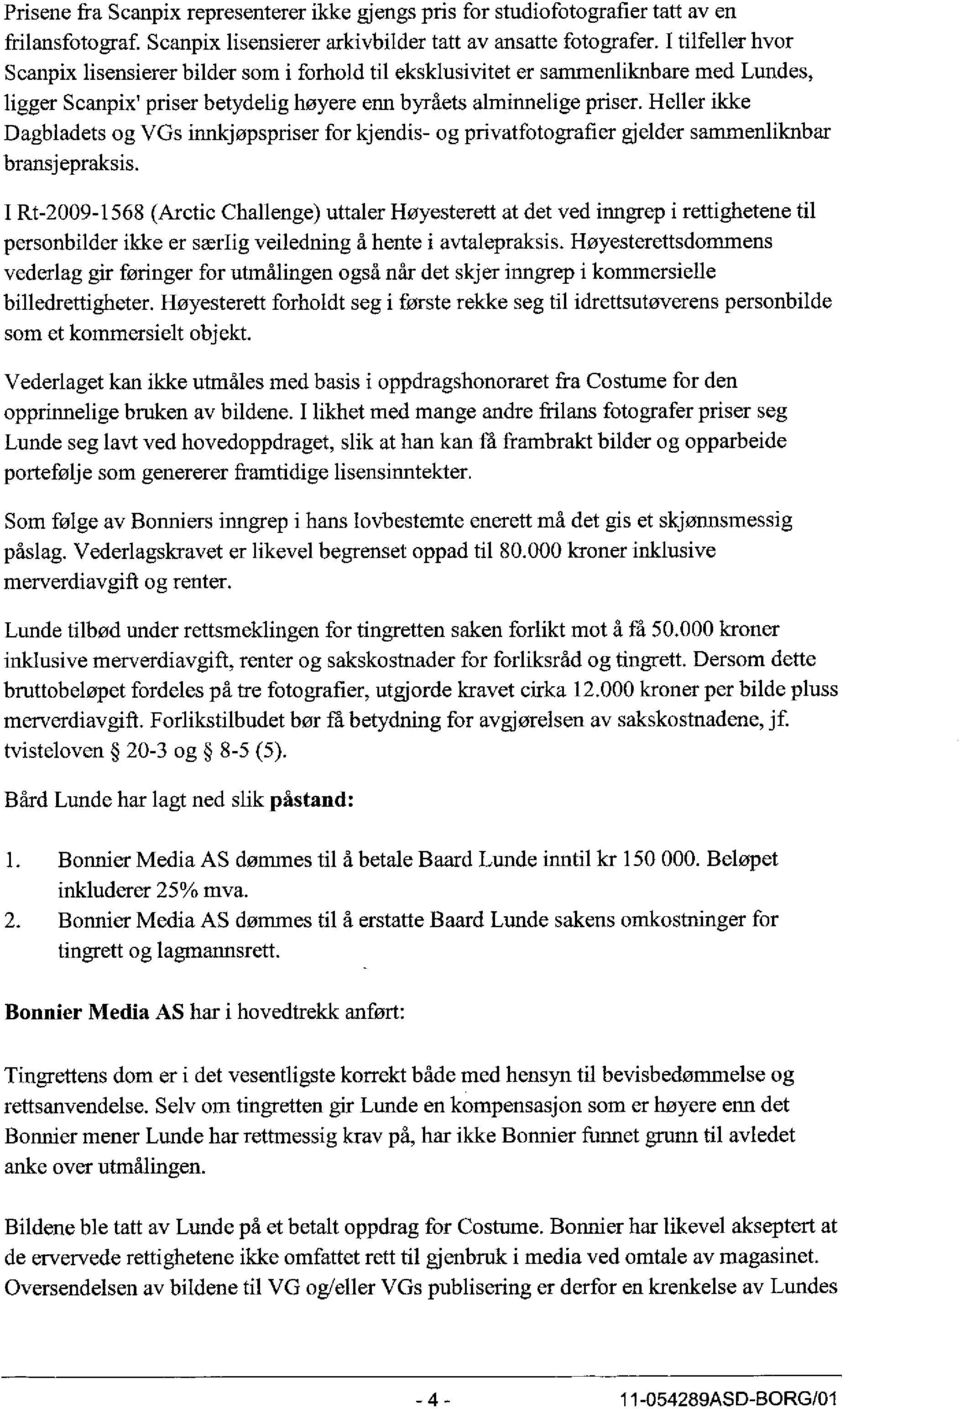 Heller ikke Dagbladets og VGs innkjøpspriser for kjendis- og privatfotografier gjelder sammenliknbar bransjepraksis.